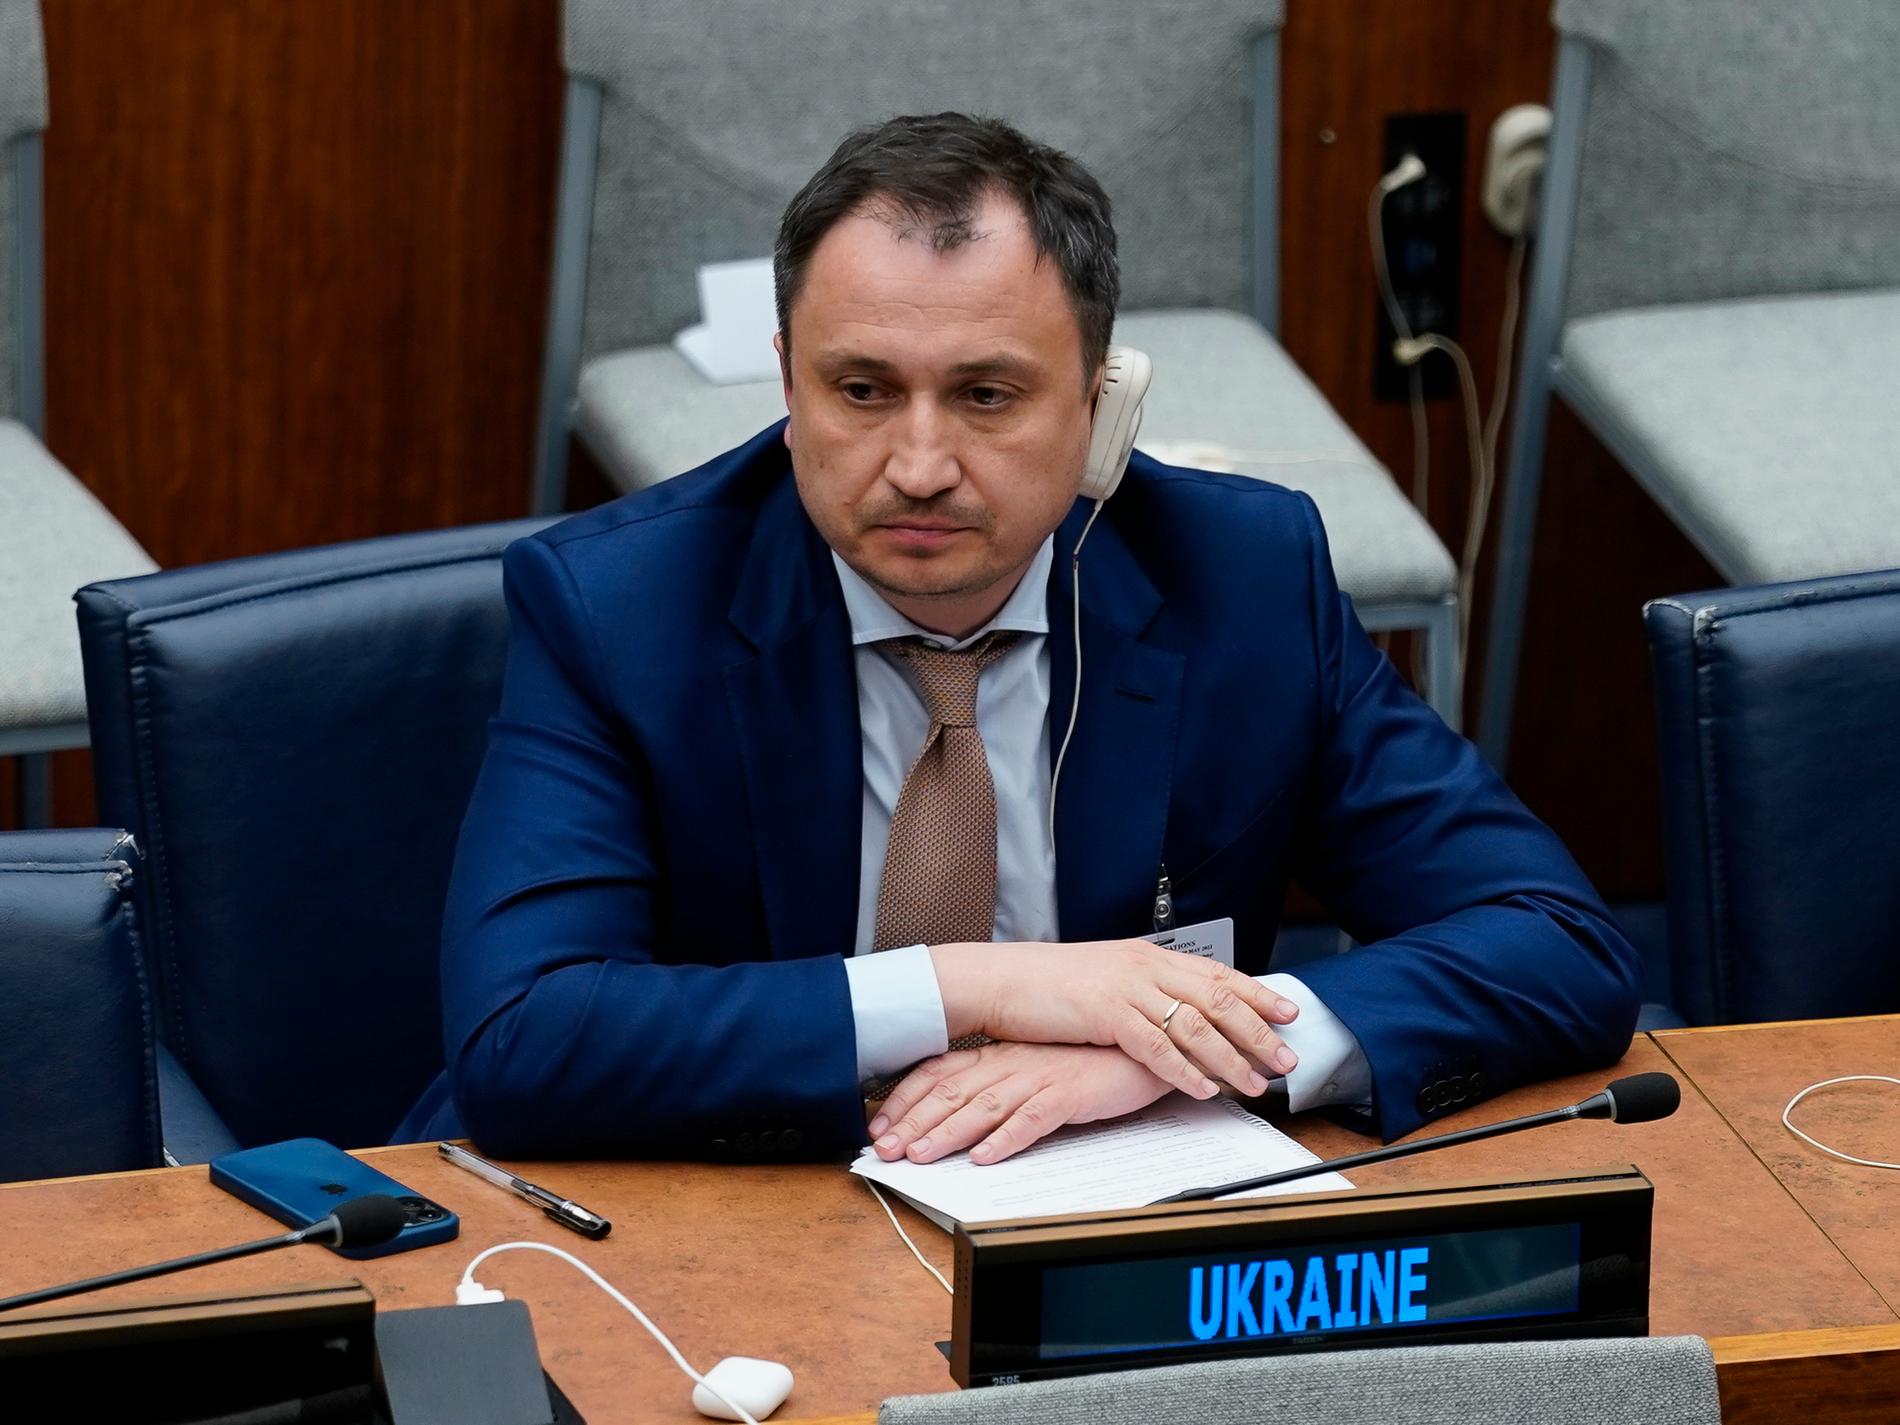 Ukrainsk minister misstänks för korruption